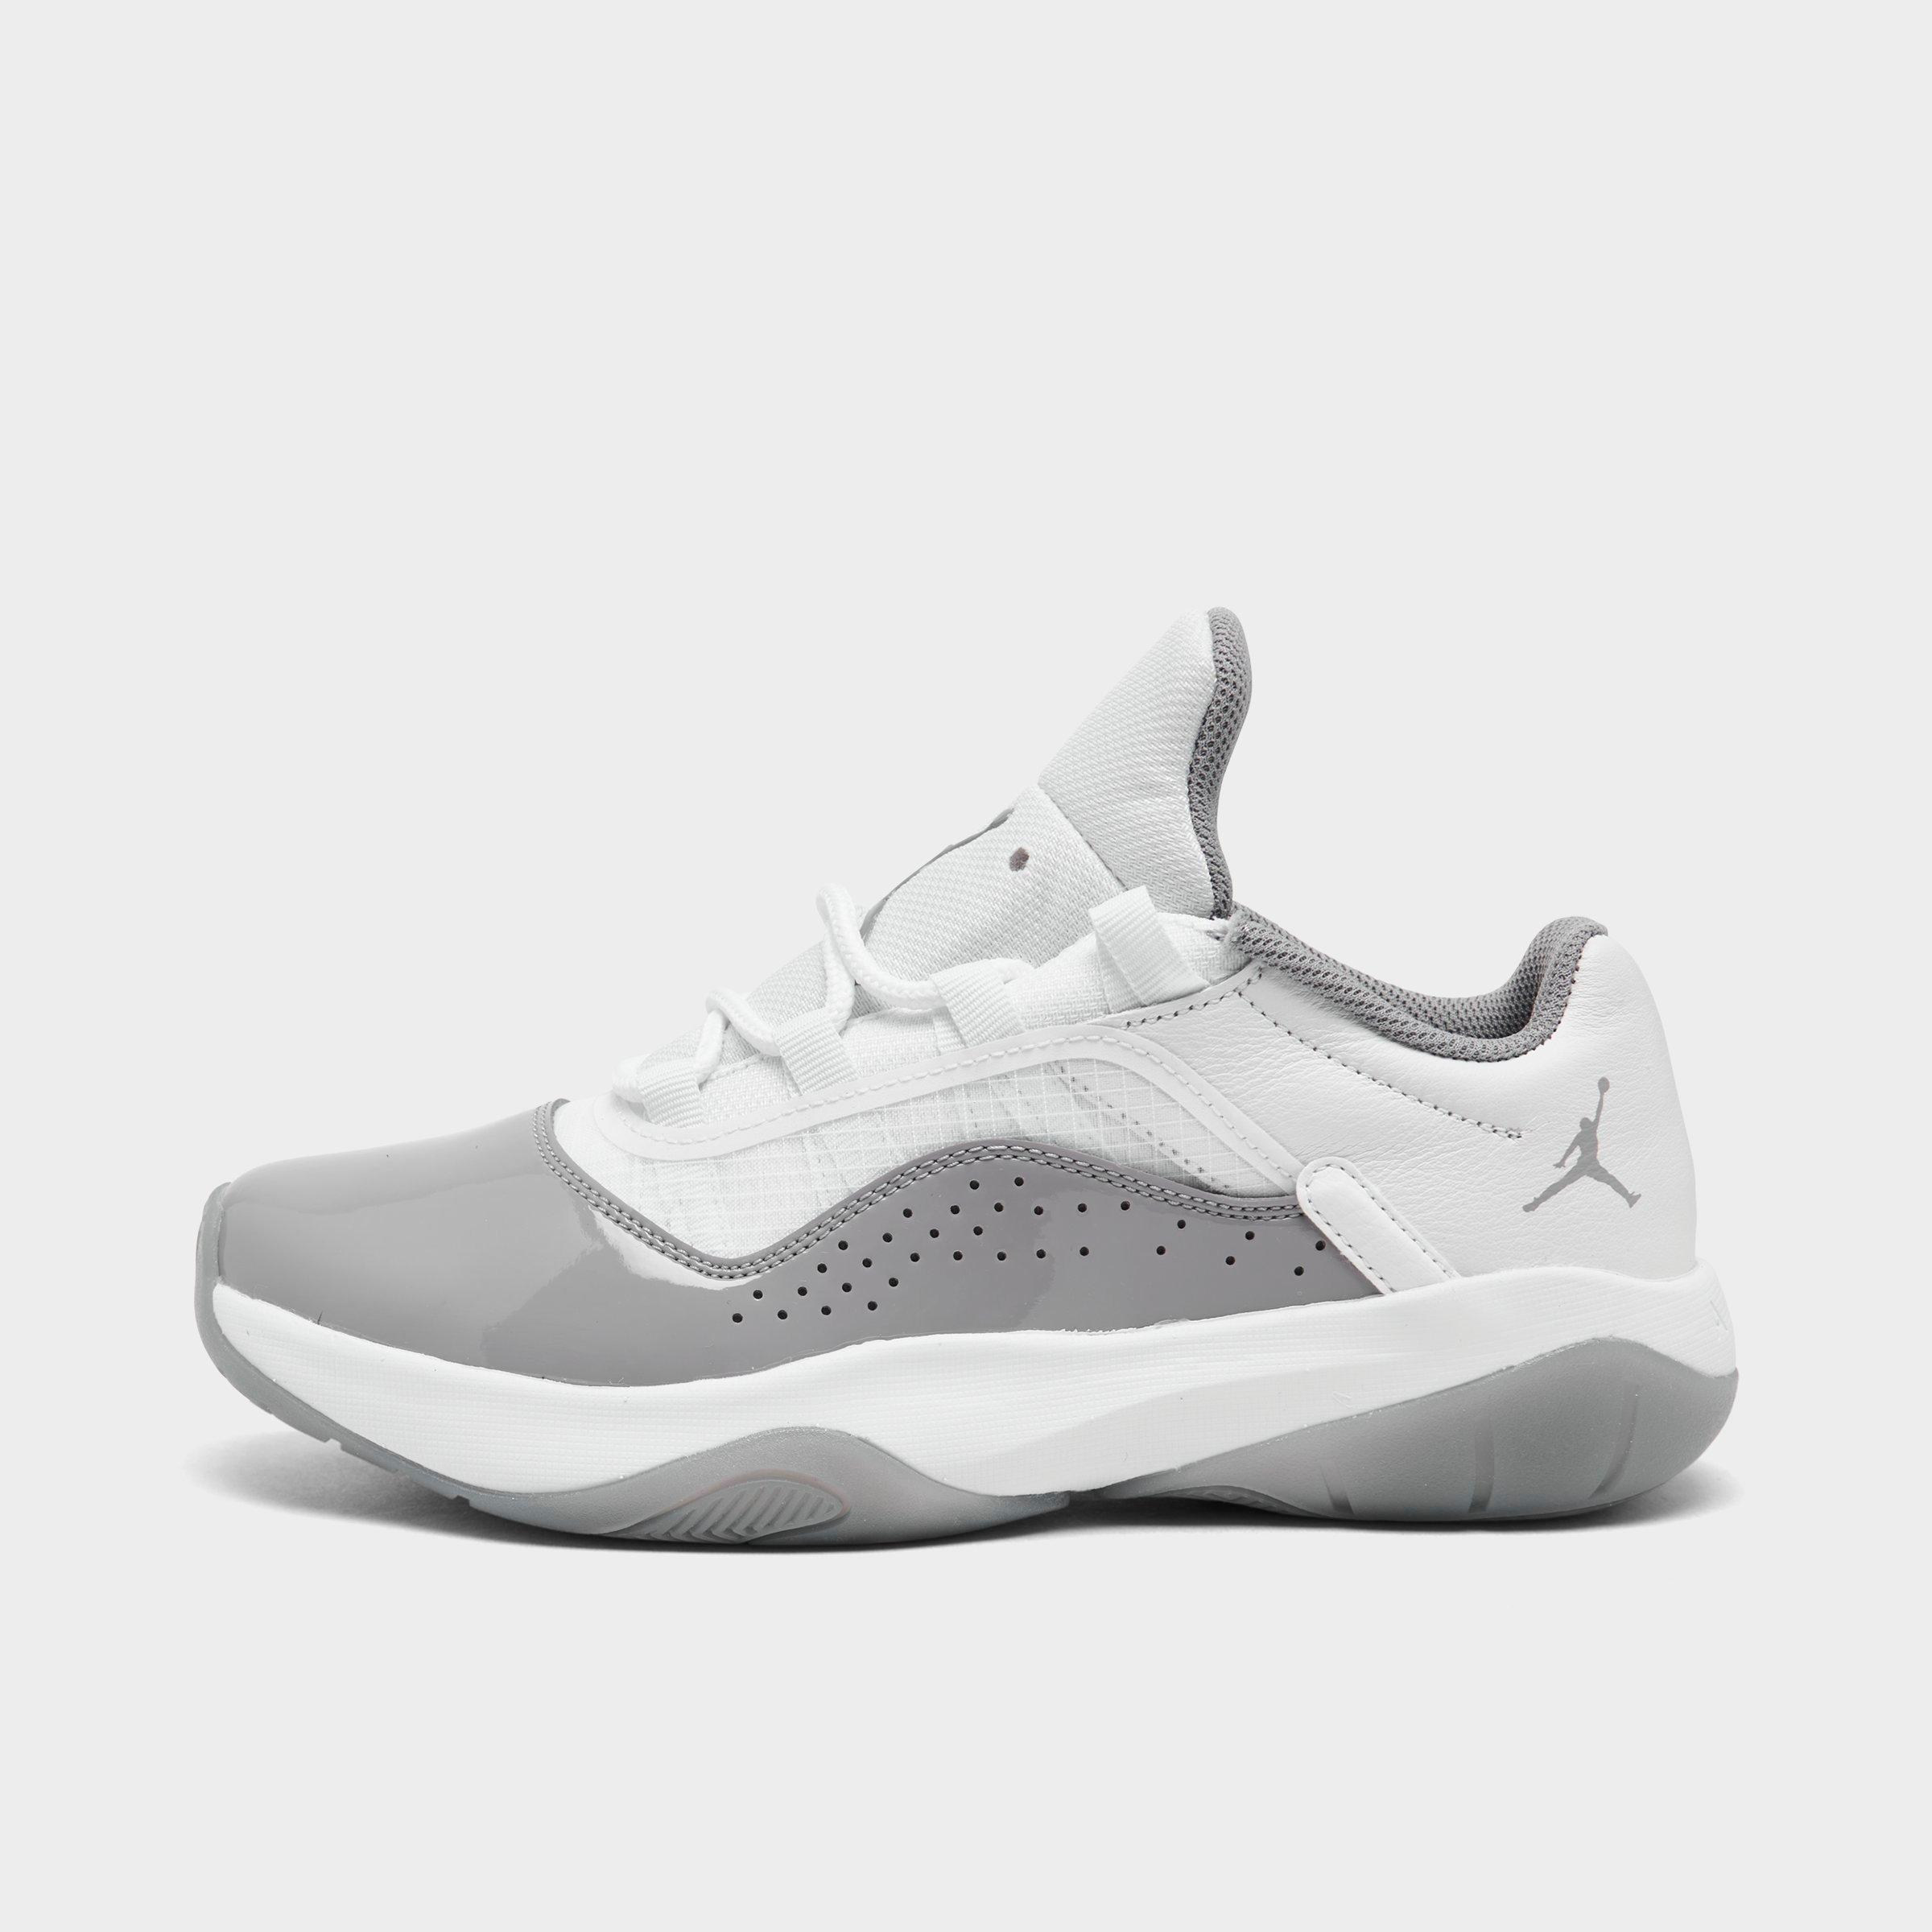 Nike Air Jordan 11 Cmft Low Sneakers In White And Gray